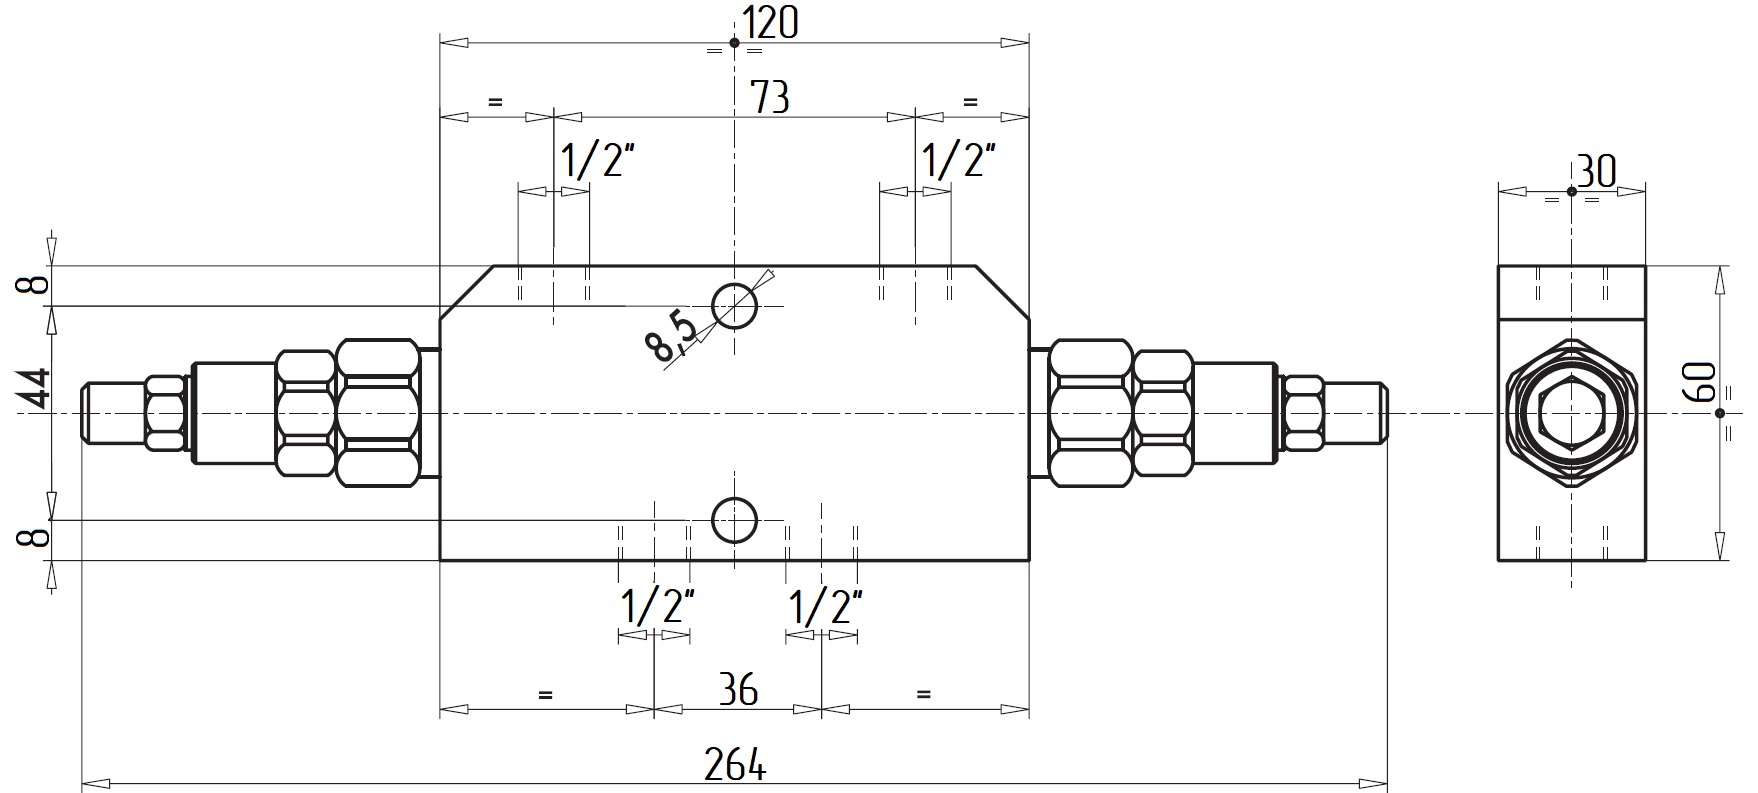 Габаритные размеры V0430/RP18-VBCD 1/2 DE RP 1:8 Подпорно-тормозной клапан двусторонний